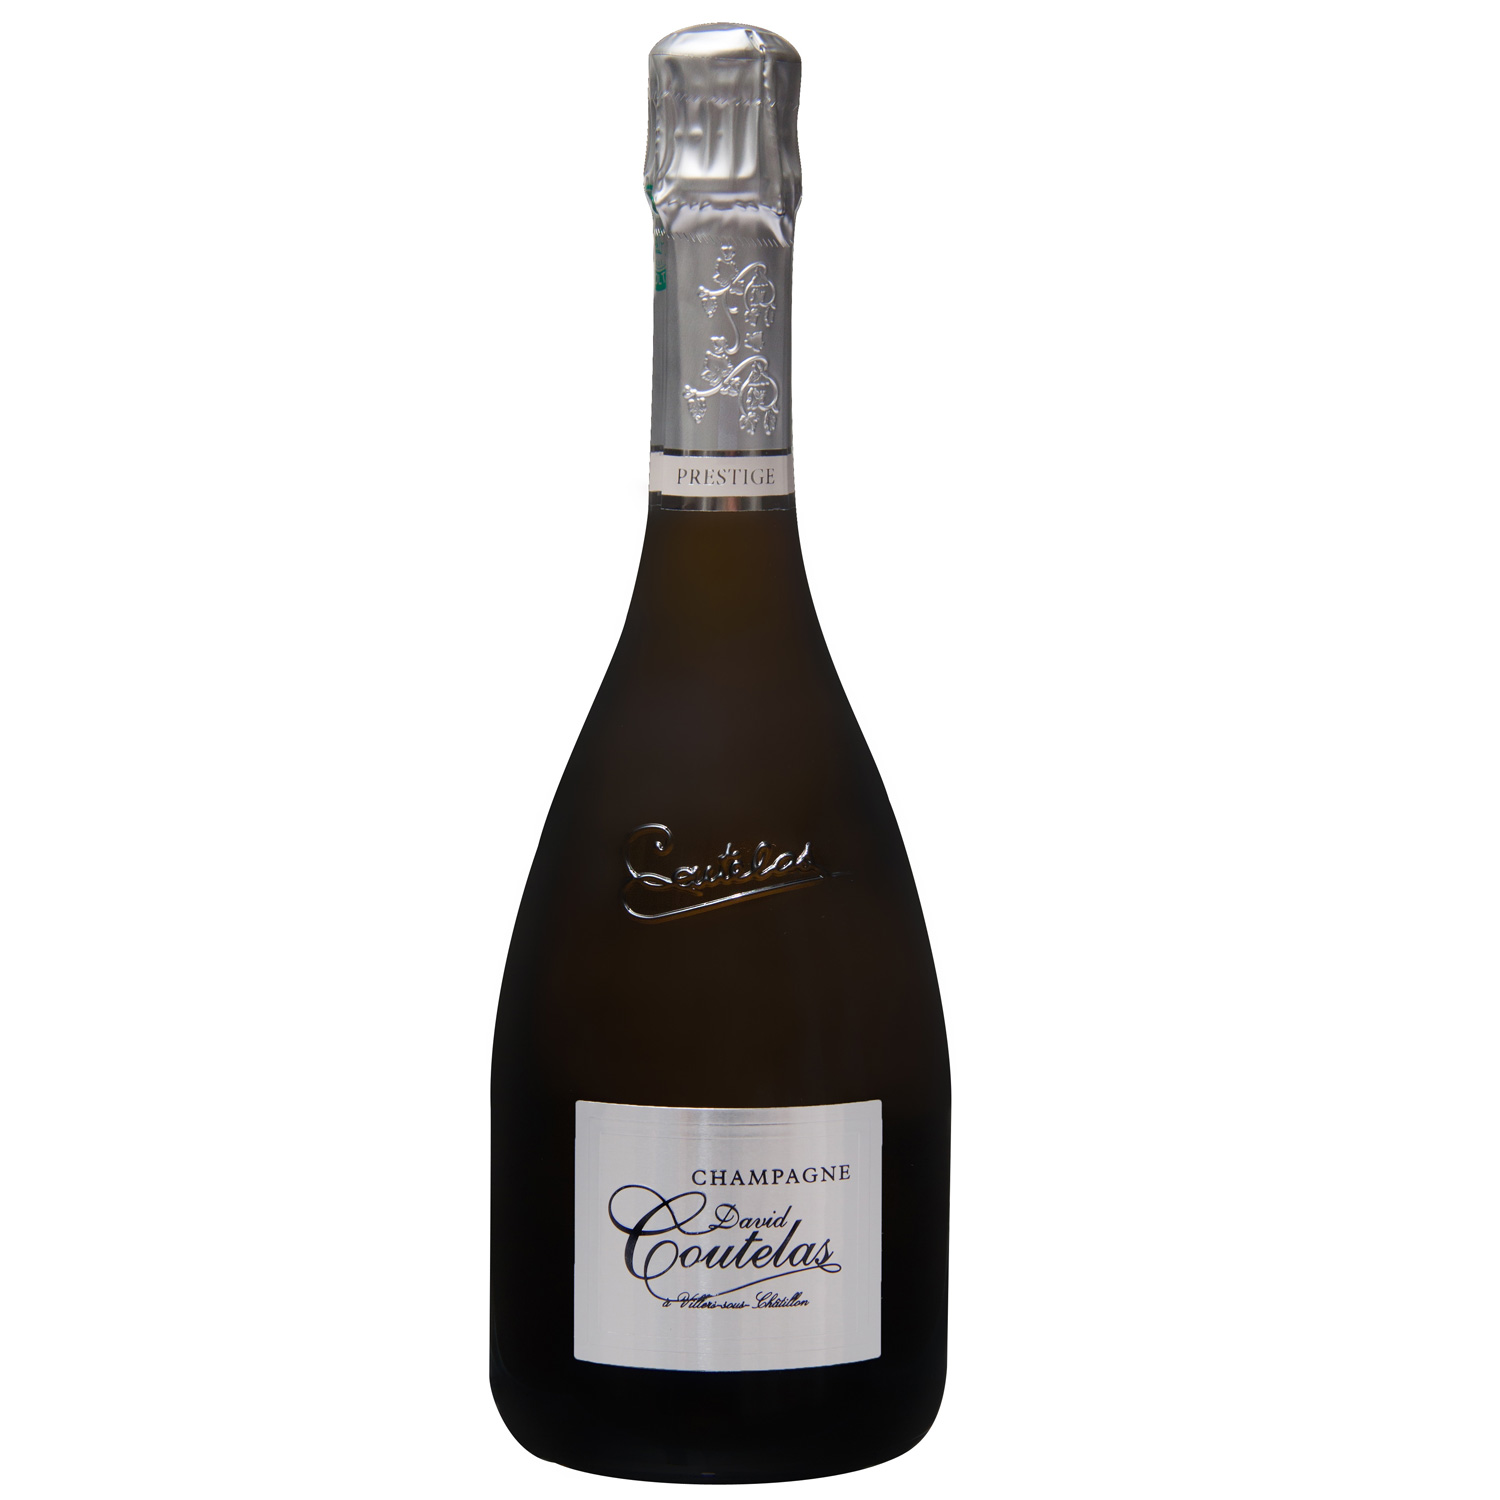 Champagne David Coutelas: Cuvée Prestige